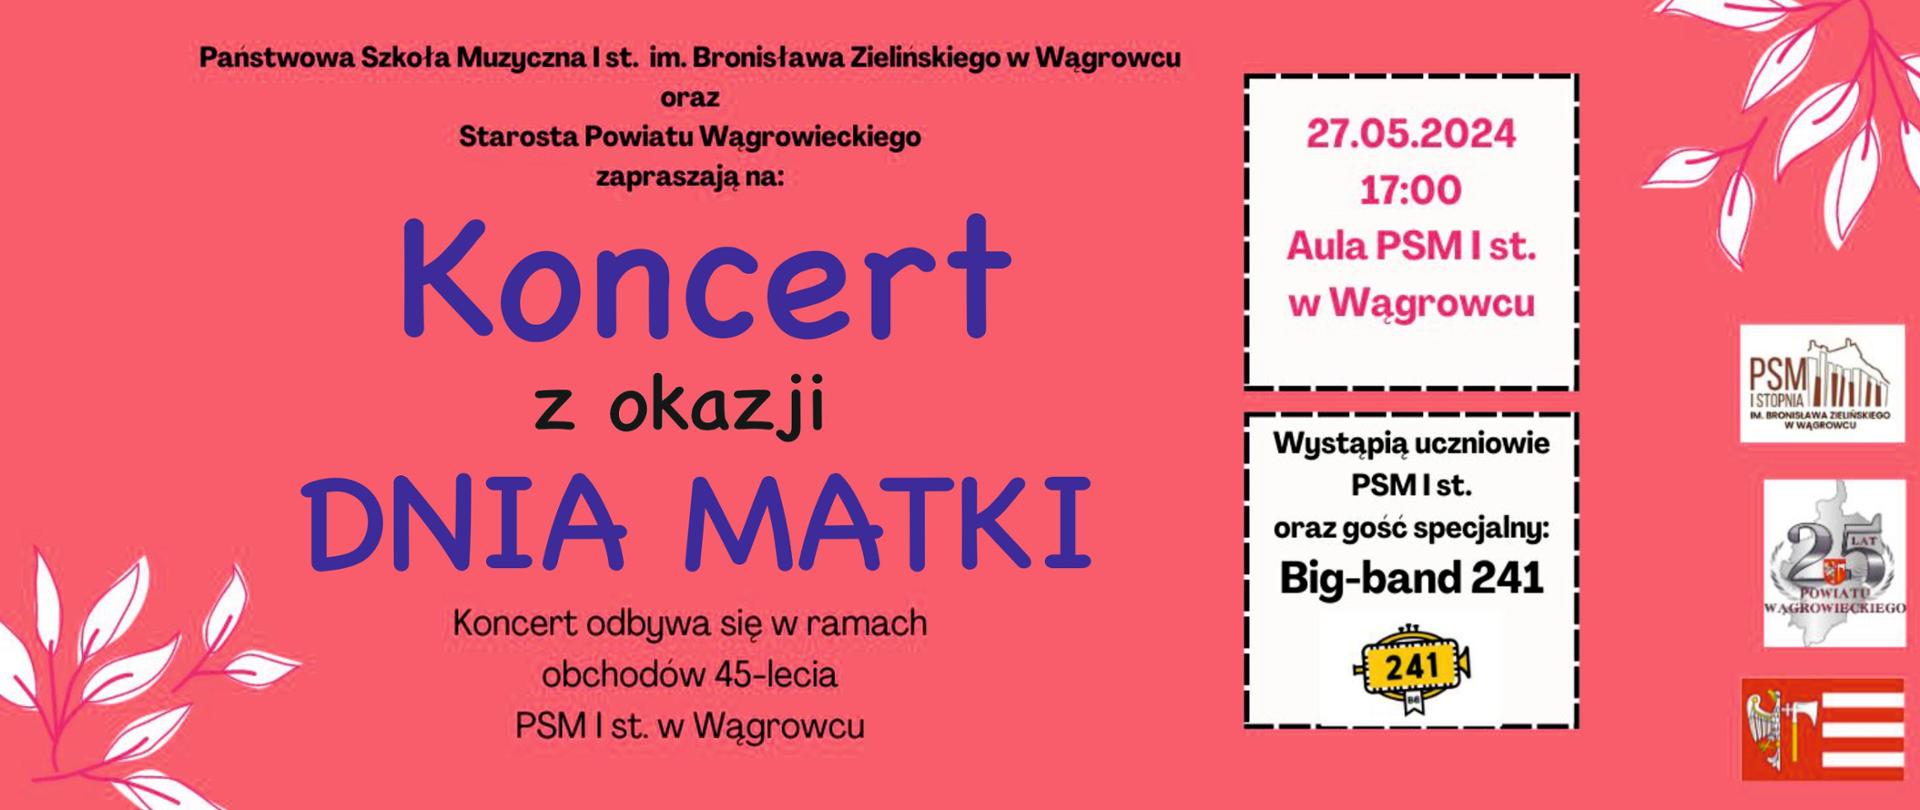 Na banerze reklamowym w kolorze pomarańczowym zawarte informacje dotyczące koncertu z okazji dnia matki w dniu 27 maja 2024r o godz. 17:00 na sali koncertowej PSM w Wągrowcu